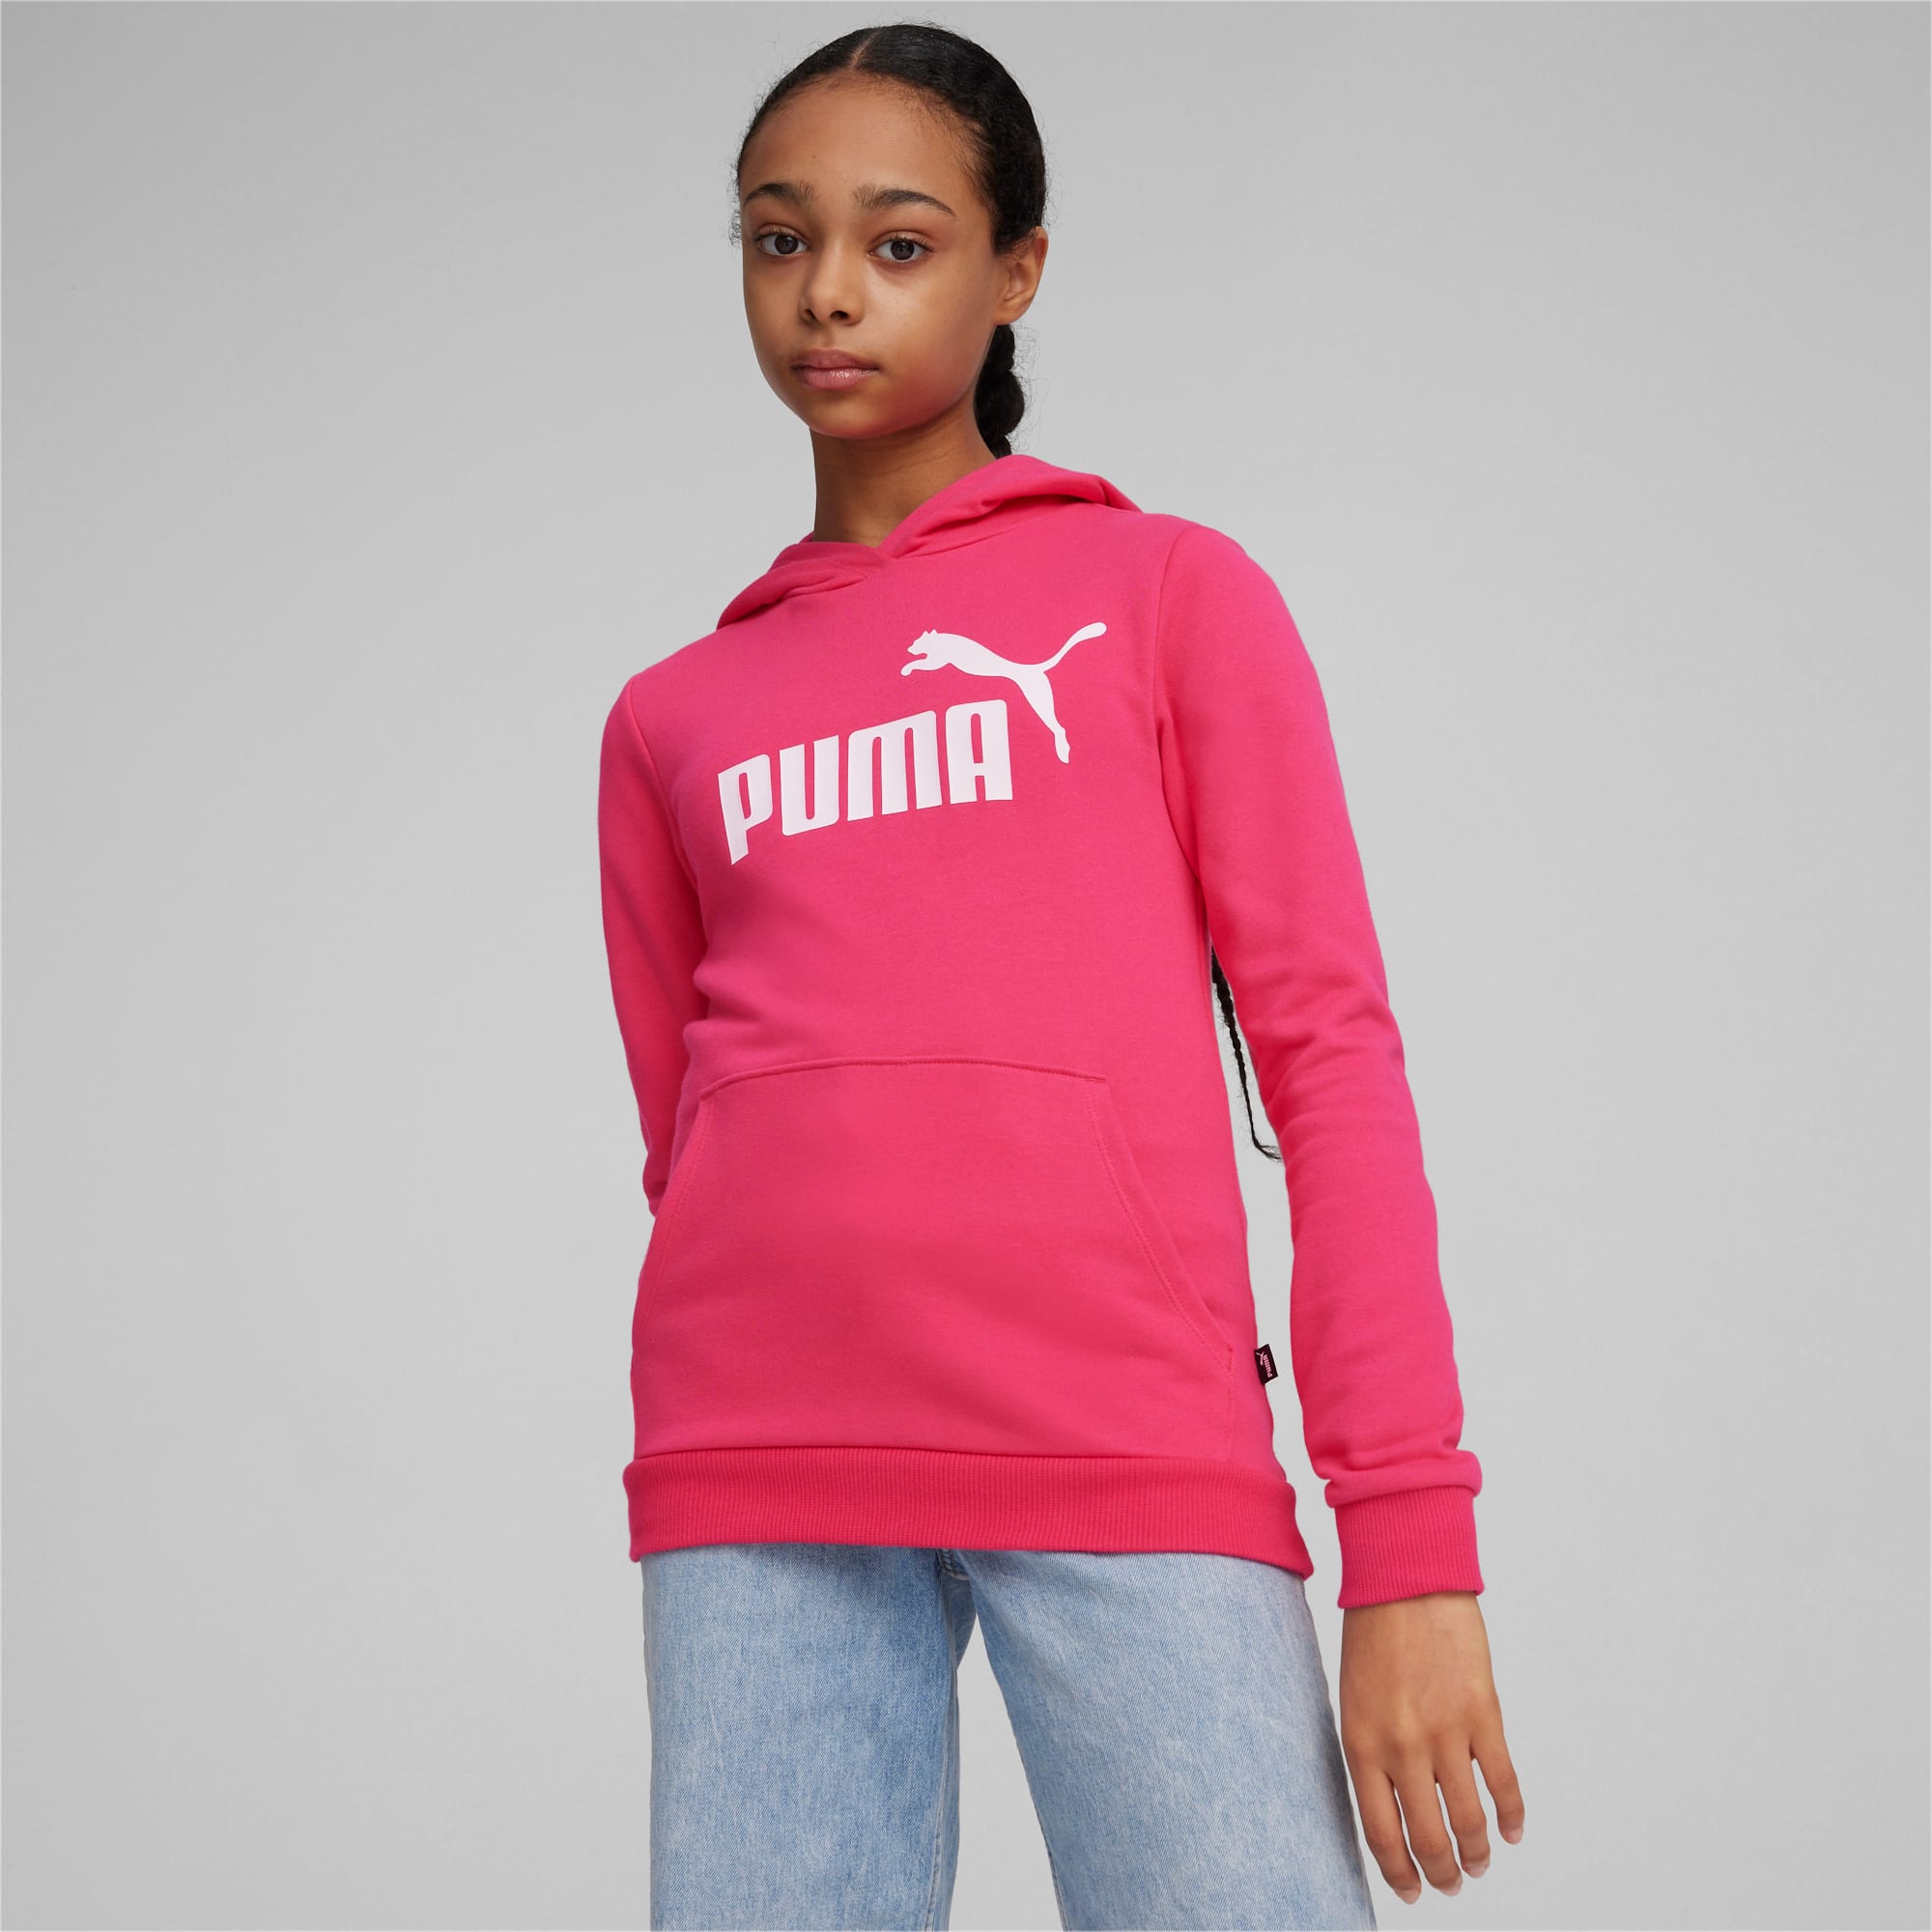 PUMA Essentials Logo Youth Hoodie, Garnet Rose, Size 13-14Y, Clothing